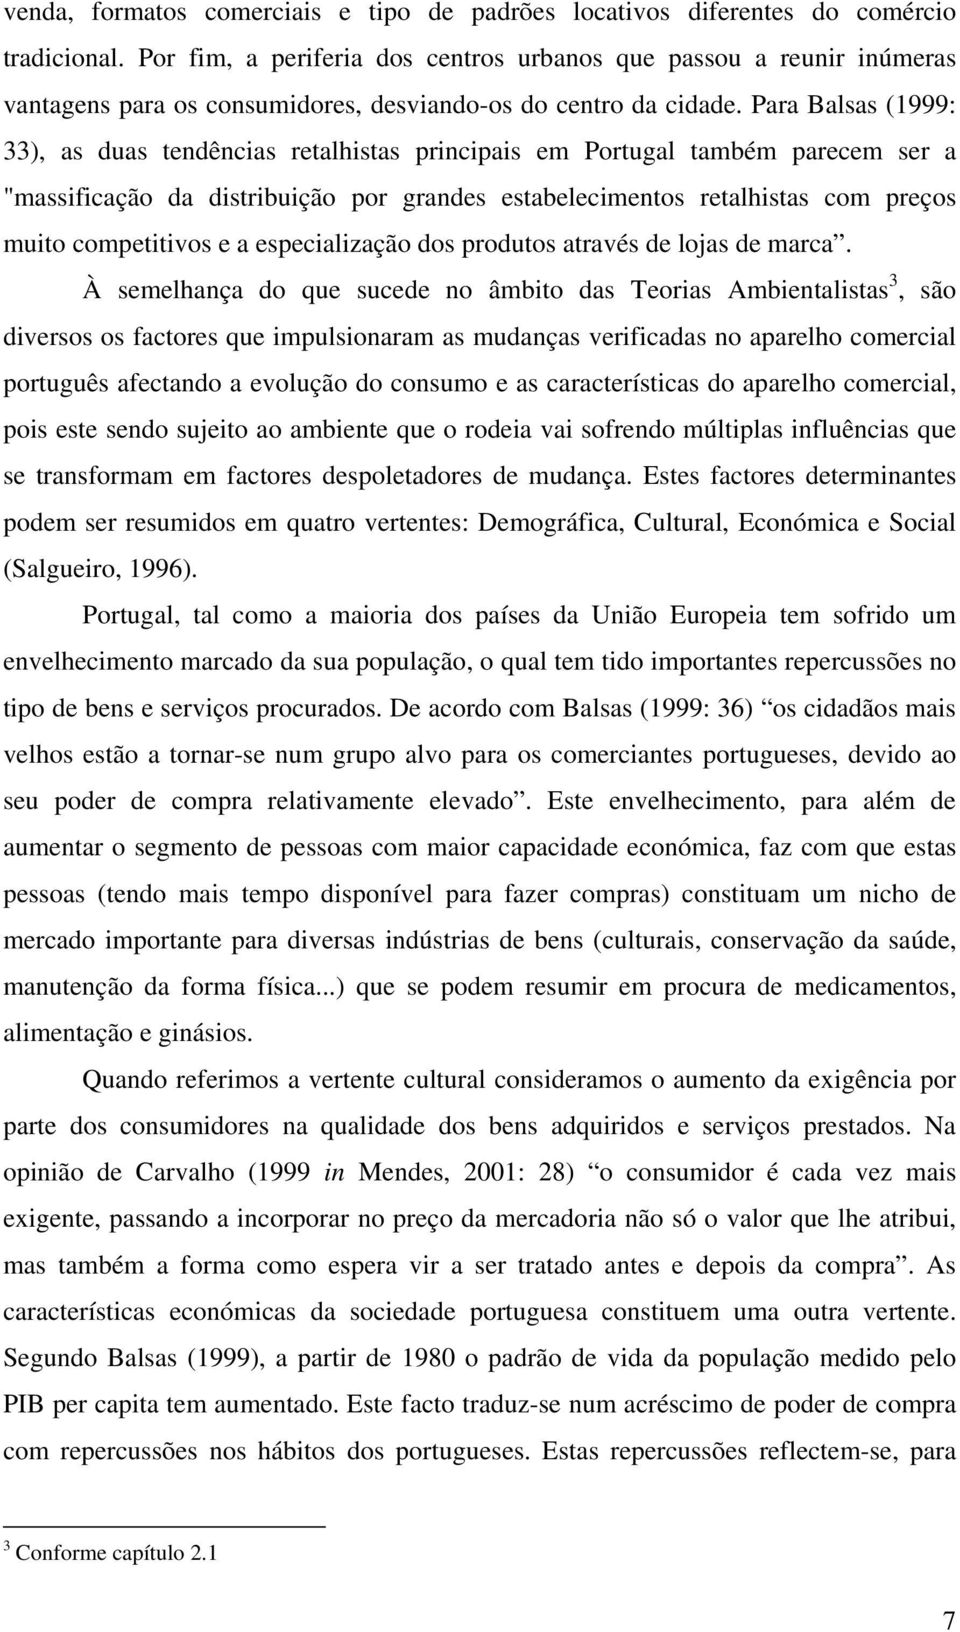 Para Balsas (1999: 33), as duas tendências retalhistas principais em Portugal também parecem ser a "massificação da distribuição por grandes estabelecimentos retalhistas com preços muito competitivos